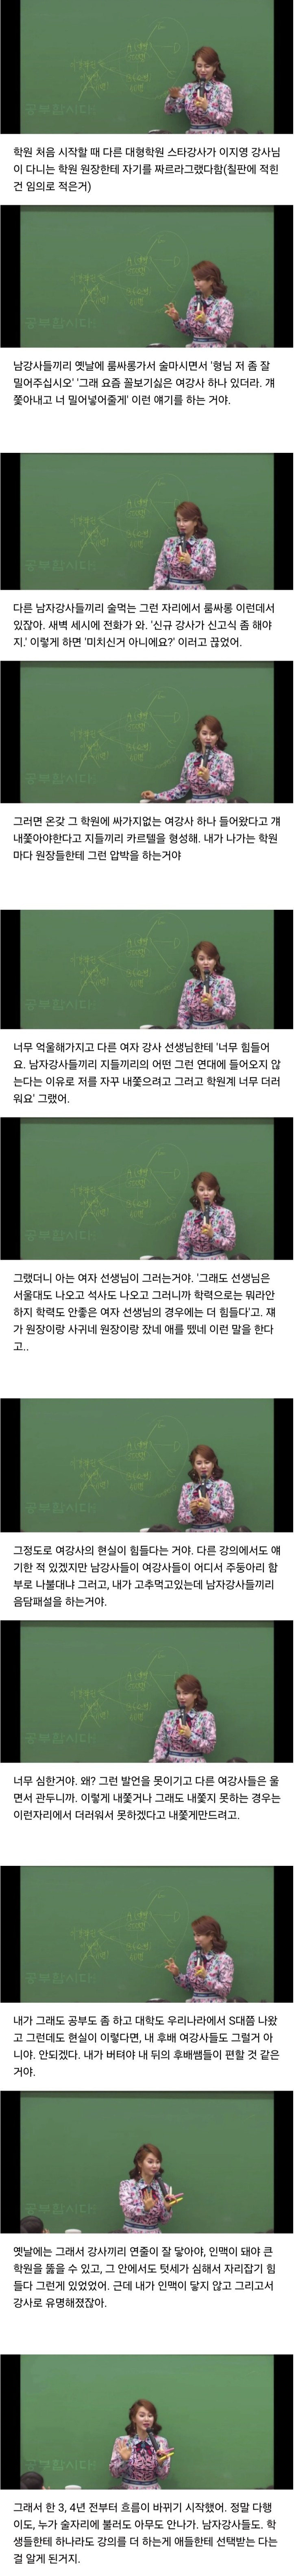 대치동 학원 텃세 & 성희롱 버틴 이지영 강사.jpg